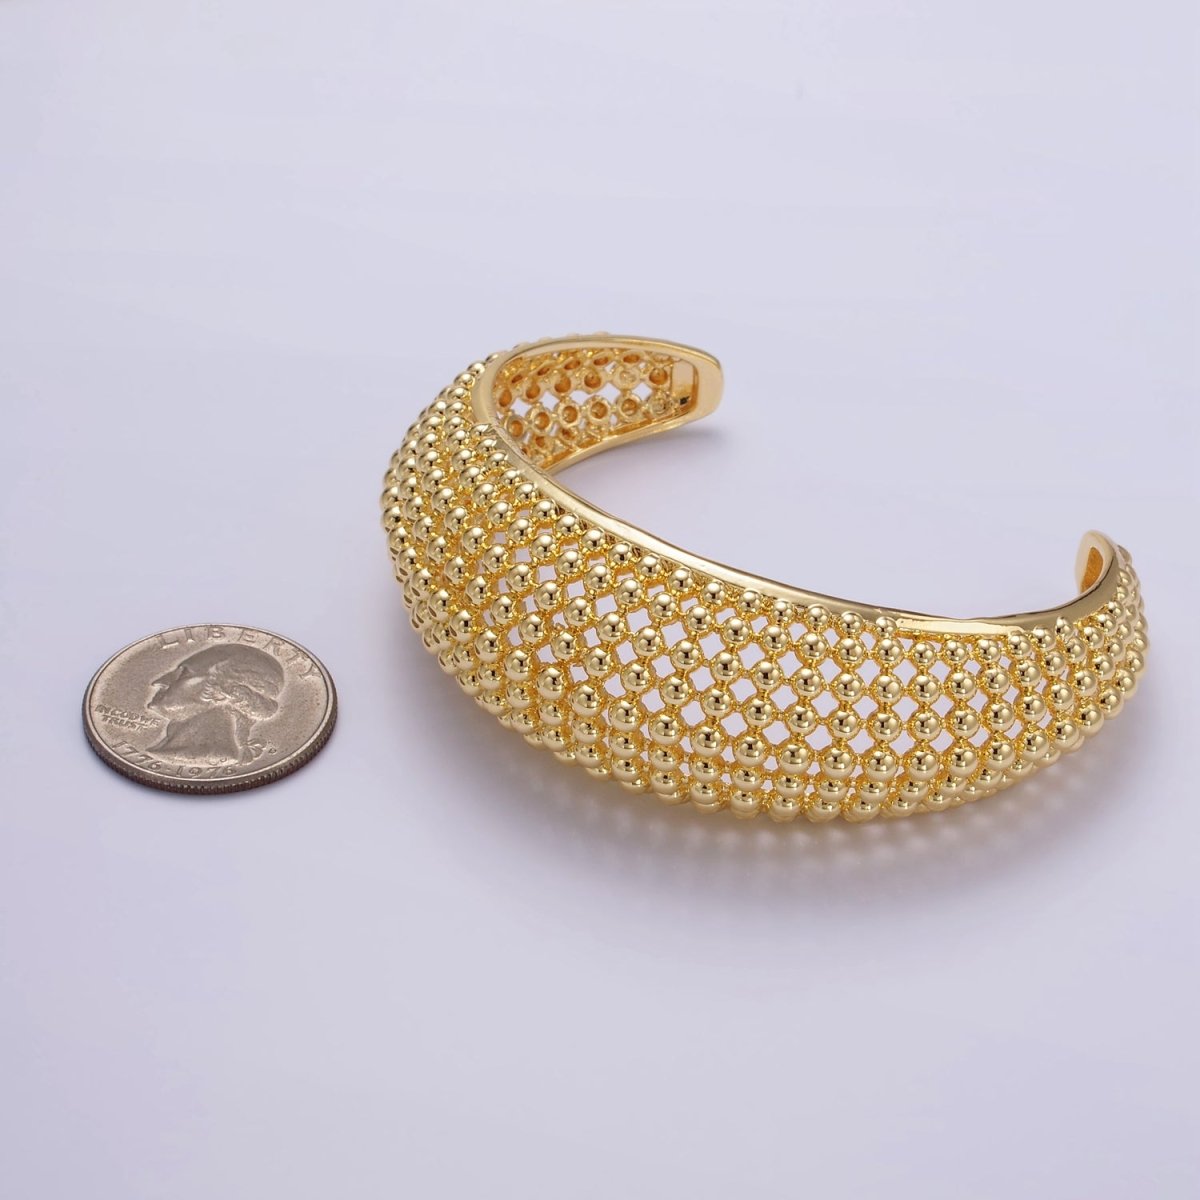 24K Gold Filled Beaded Bubble Wide Open Band Cuff Bracelet | WA - 2529 - DLUXCA